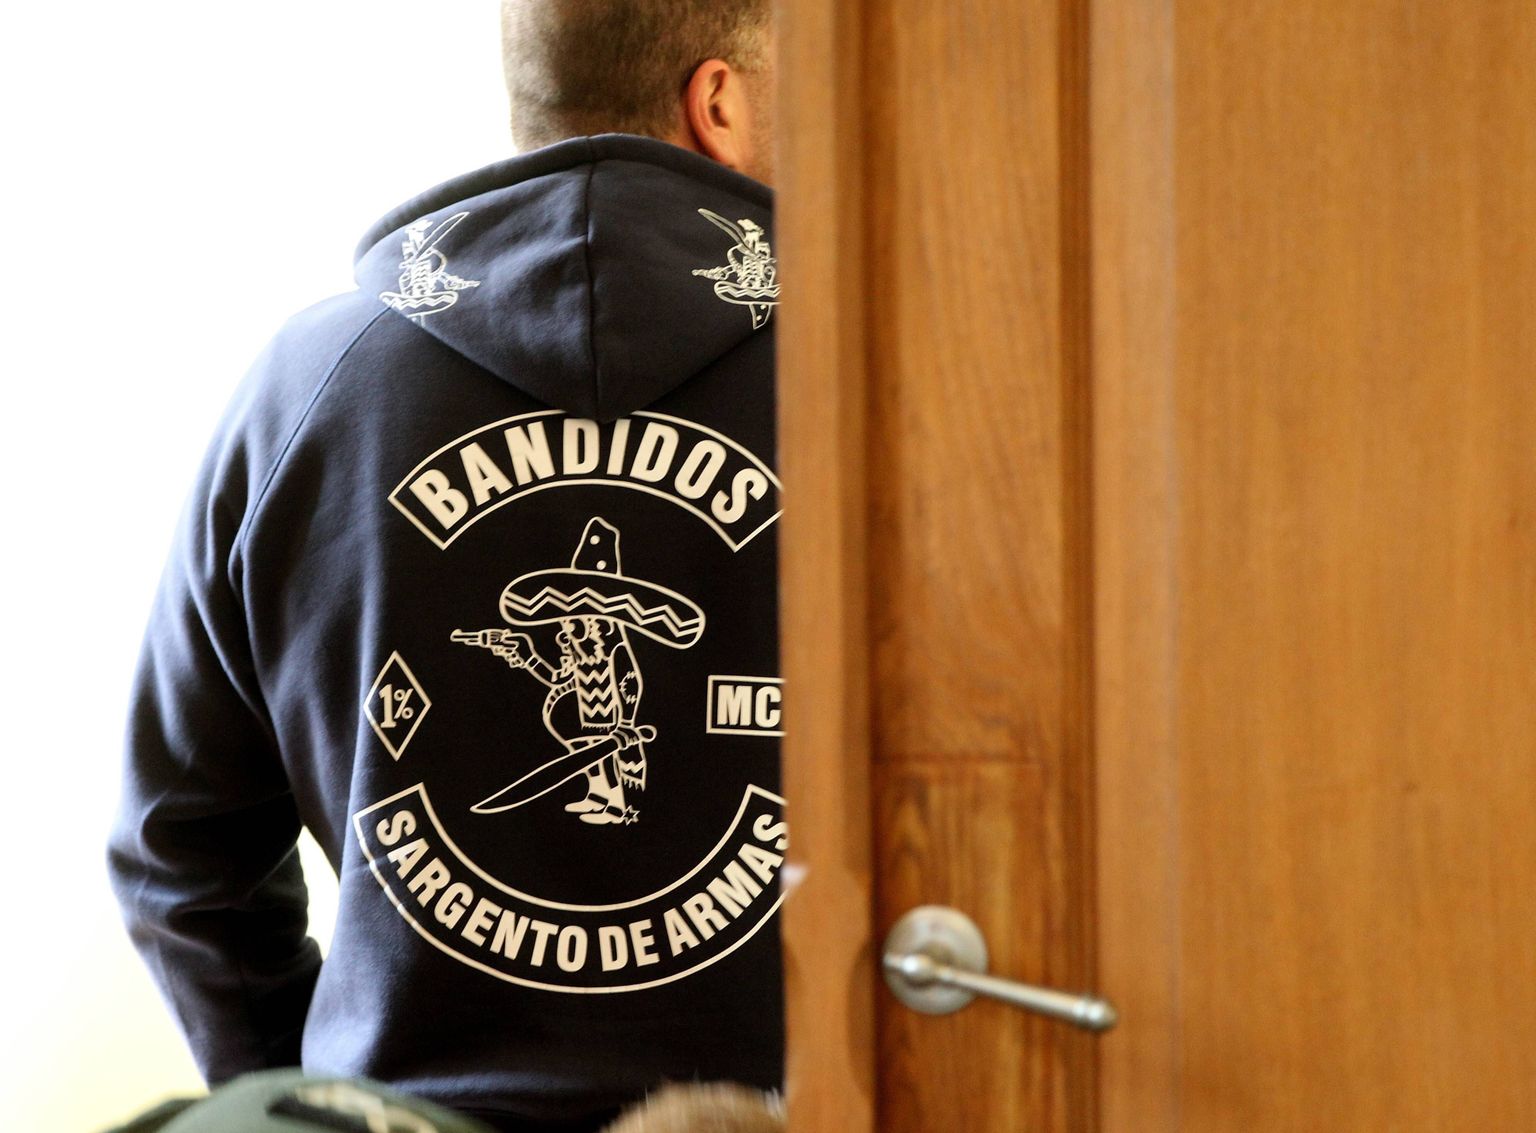 Bandidose motojõugu tegemisi jälgivad võimud hoolega.